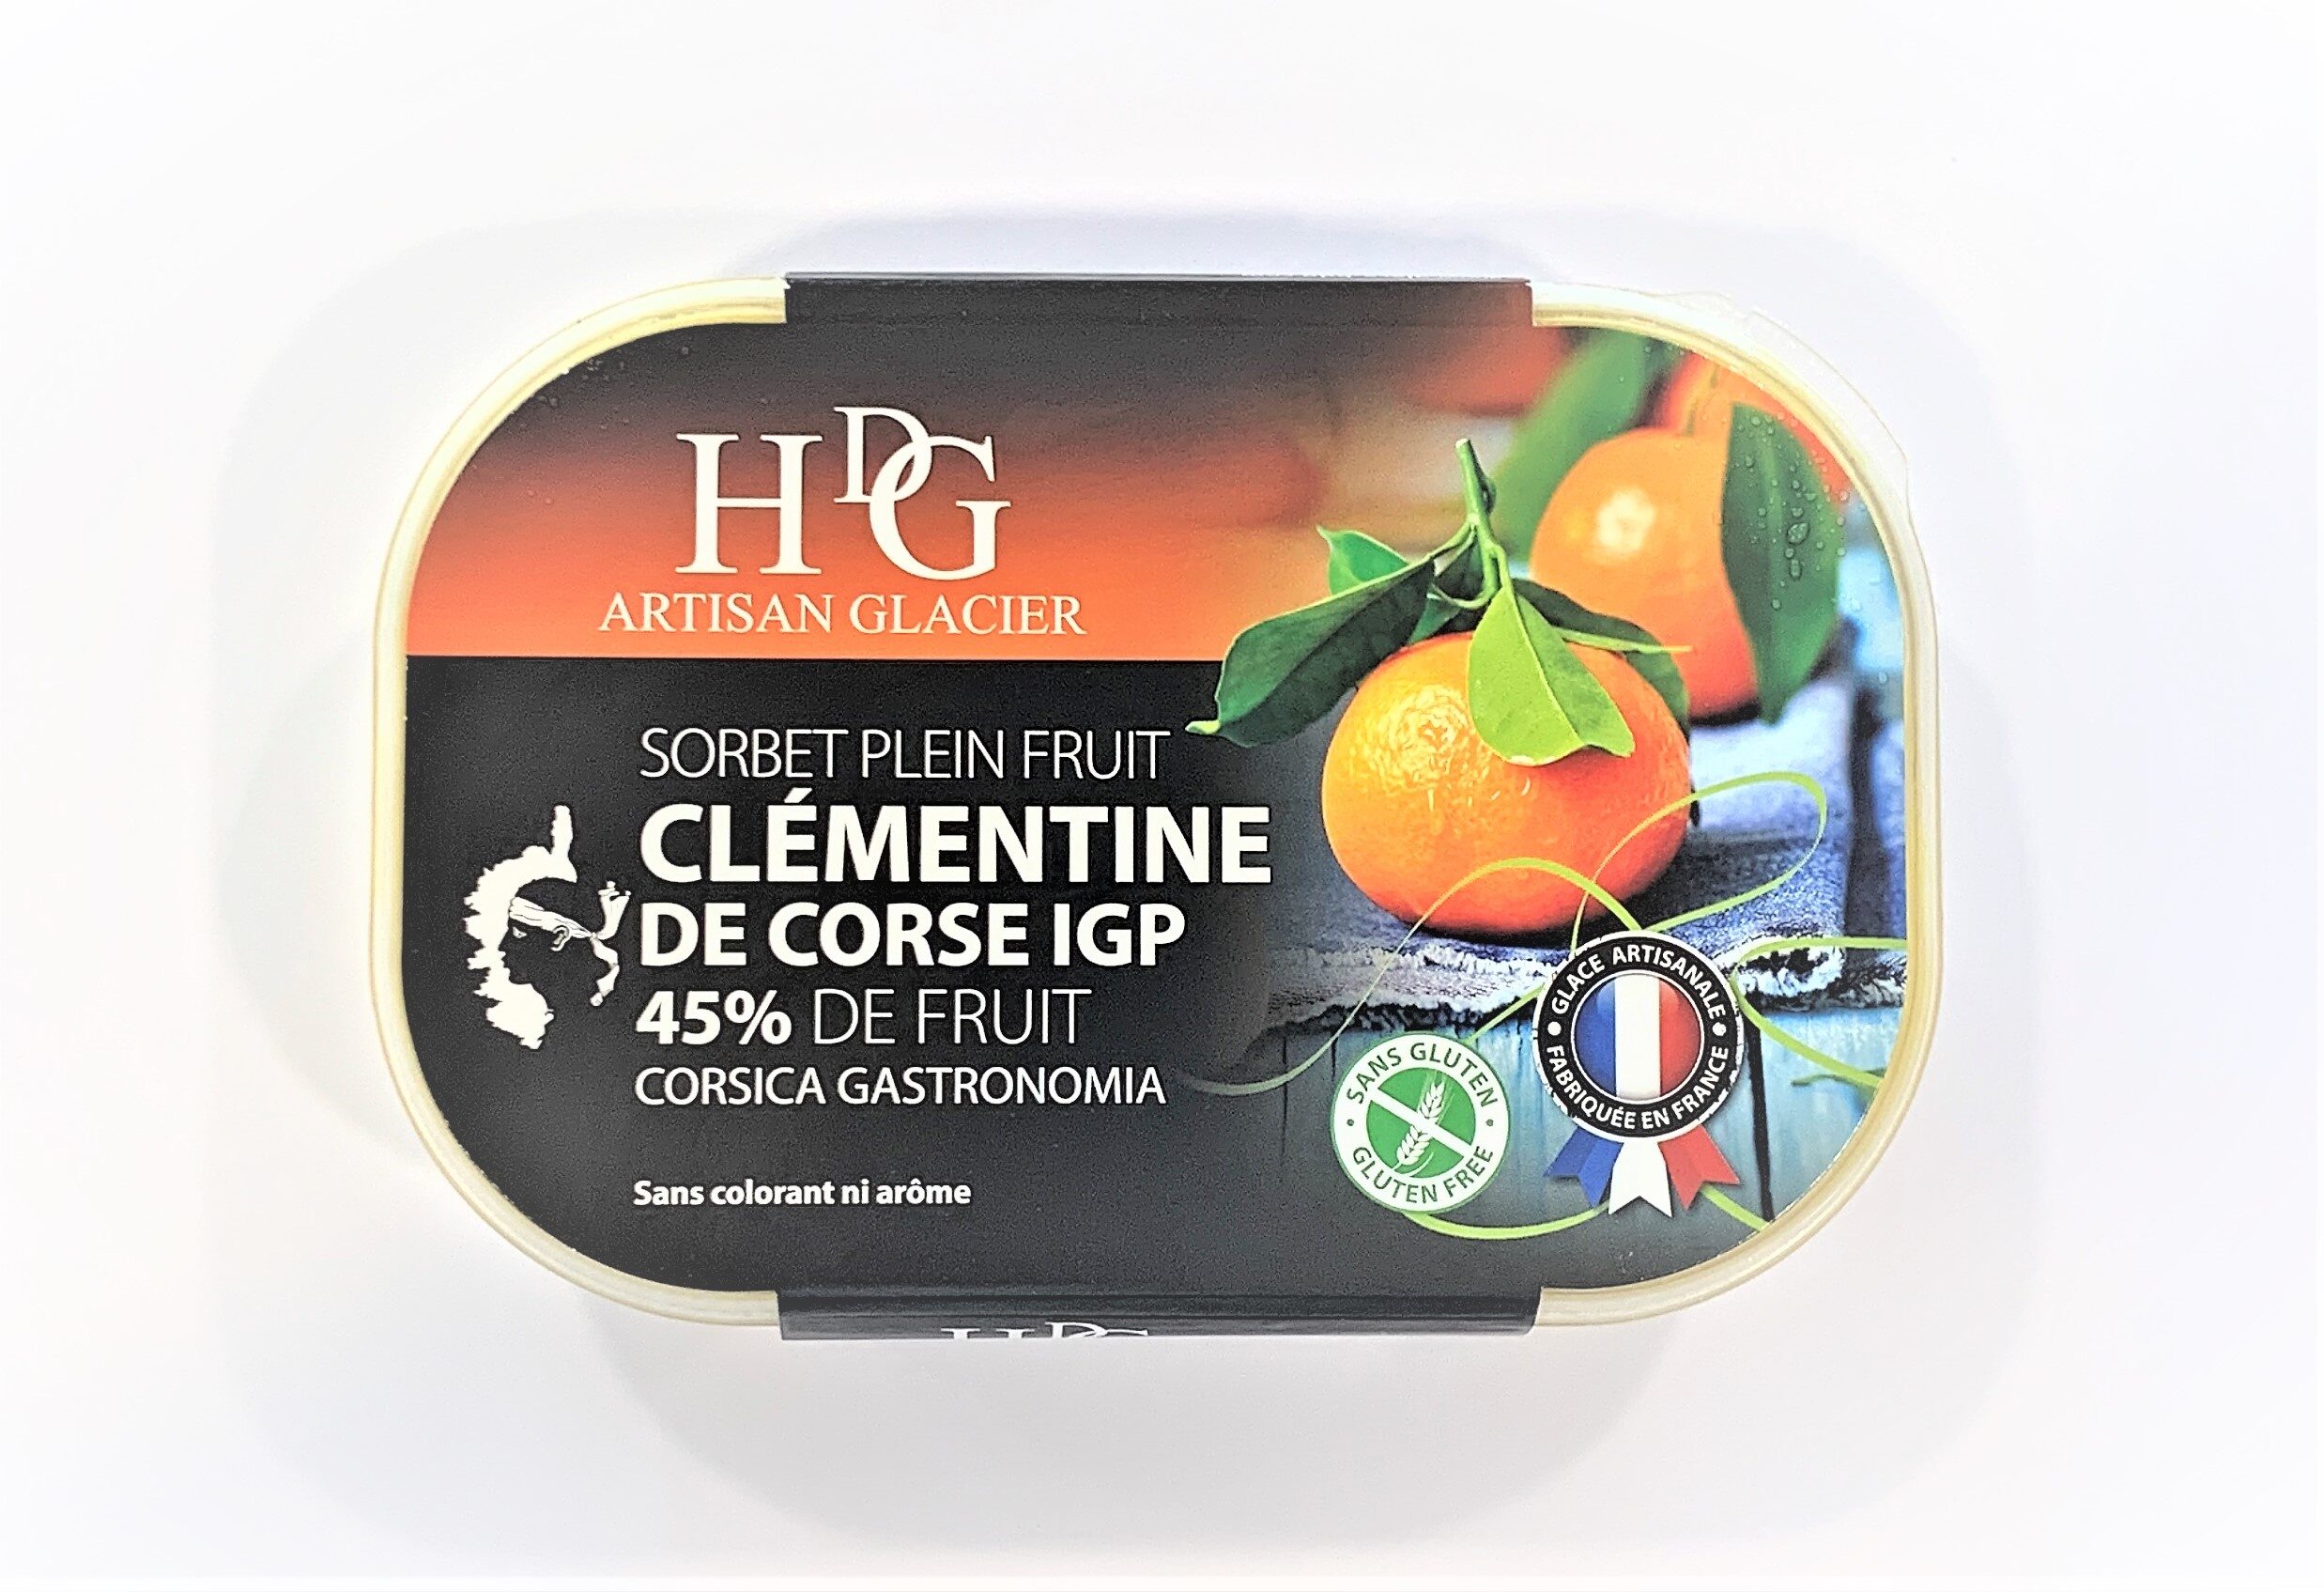 Sorbet plein fruit CLEMENTINE CORSE IGP, 45% de fruit - Product - fr